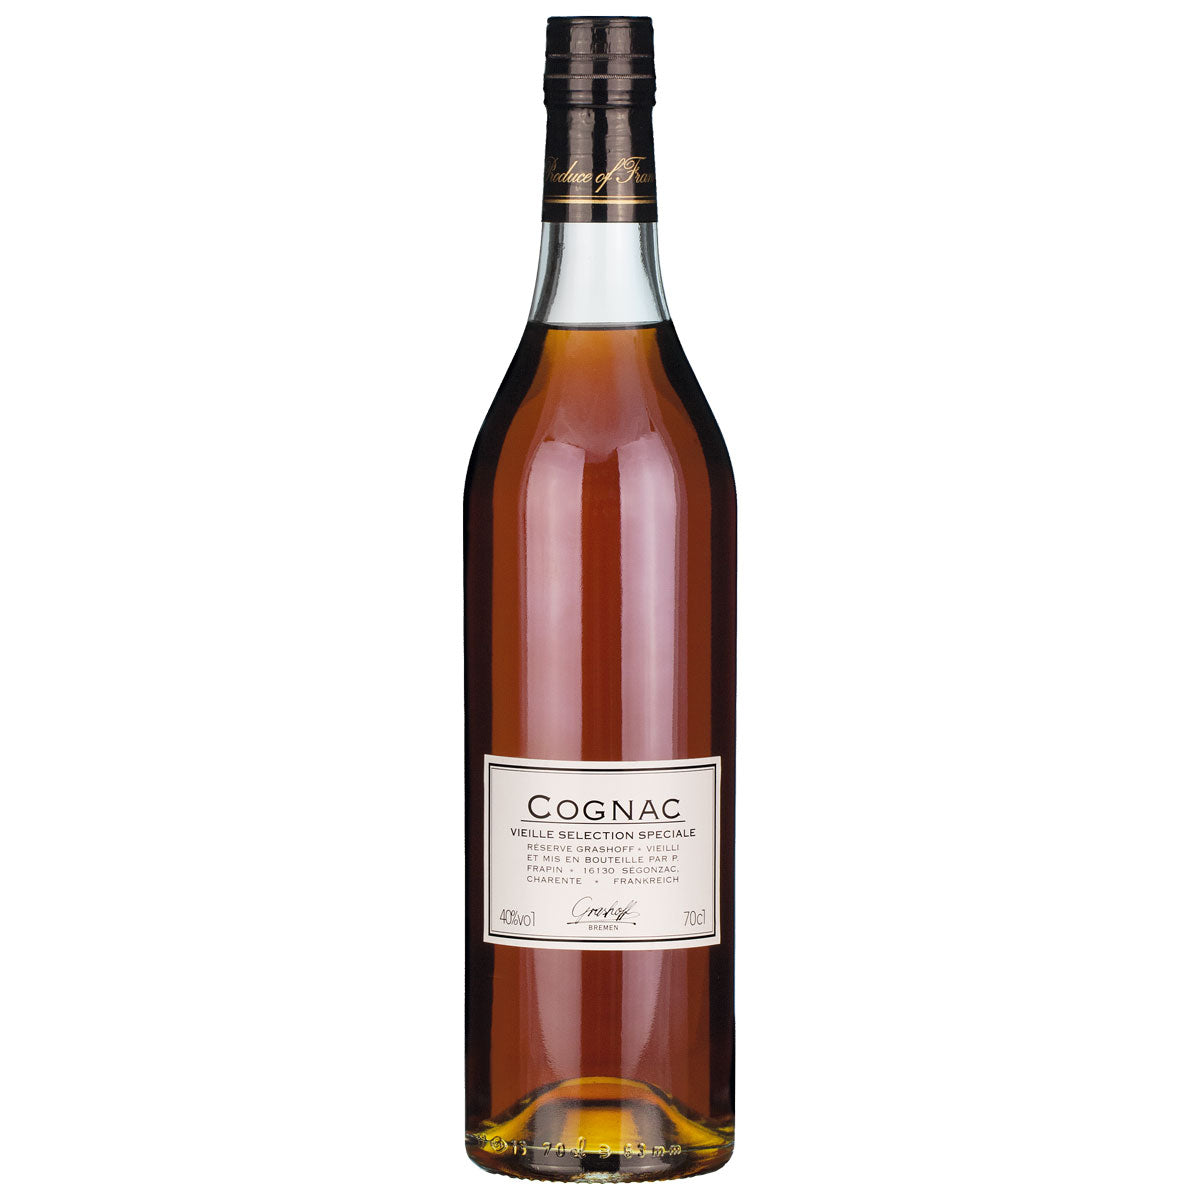 Cognac Vieille Selection Speciale